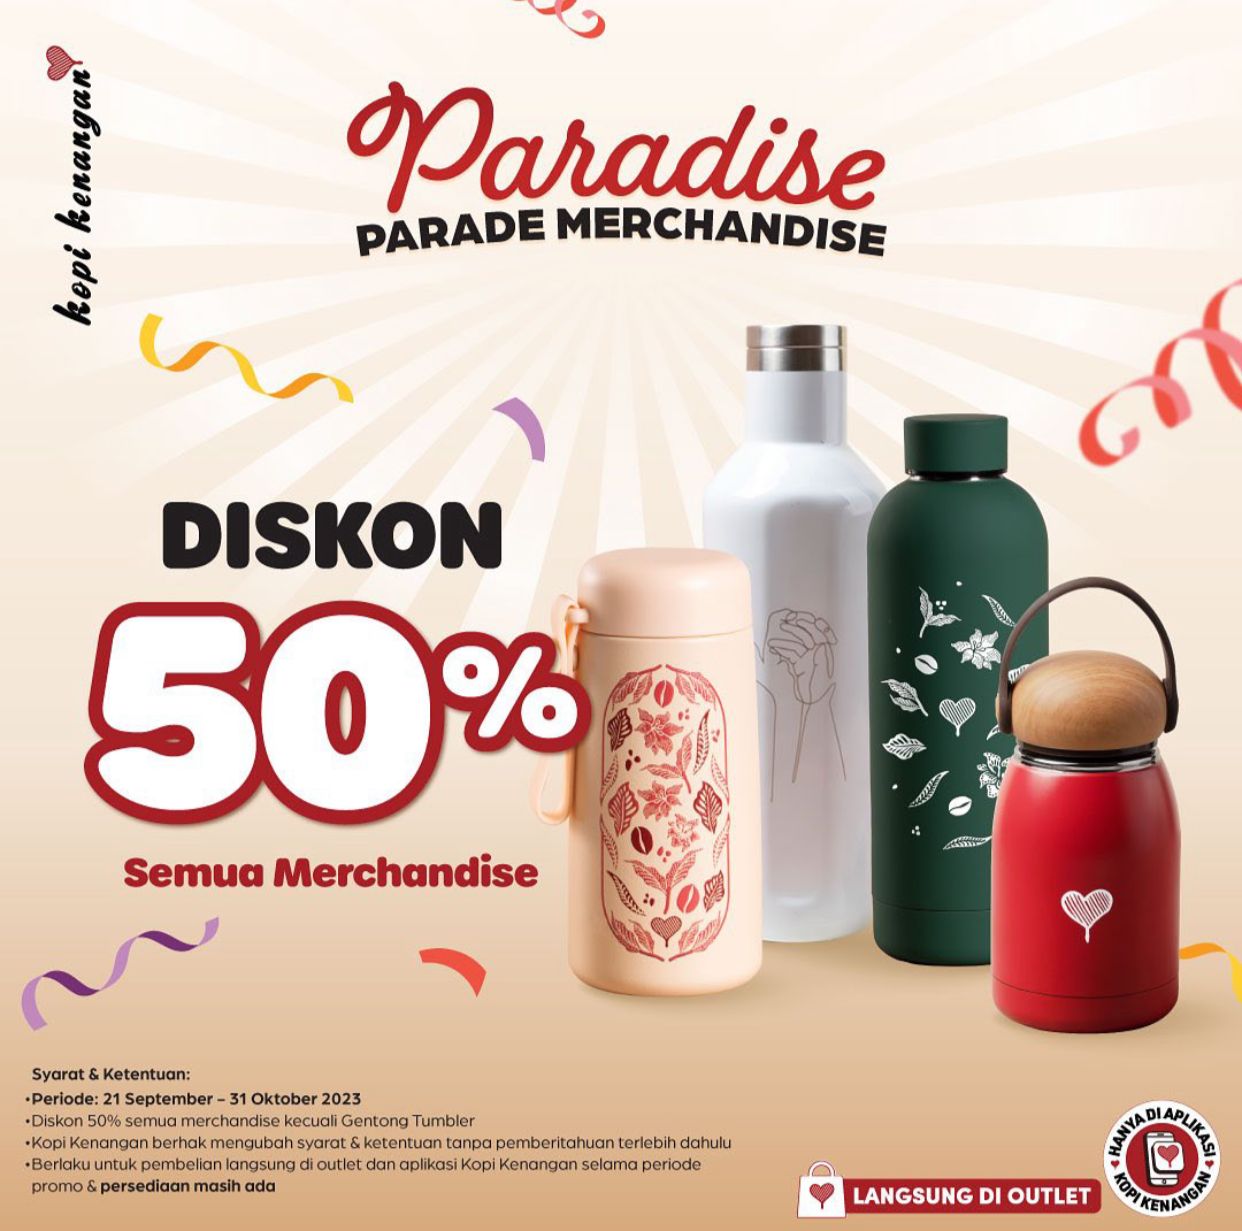 Promo Kopi Kenangan Parade Merchandise, Diskon Hingga 50%!